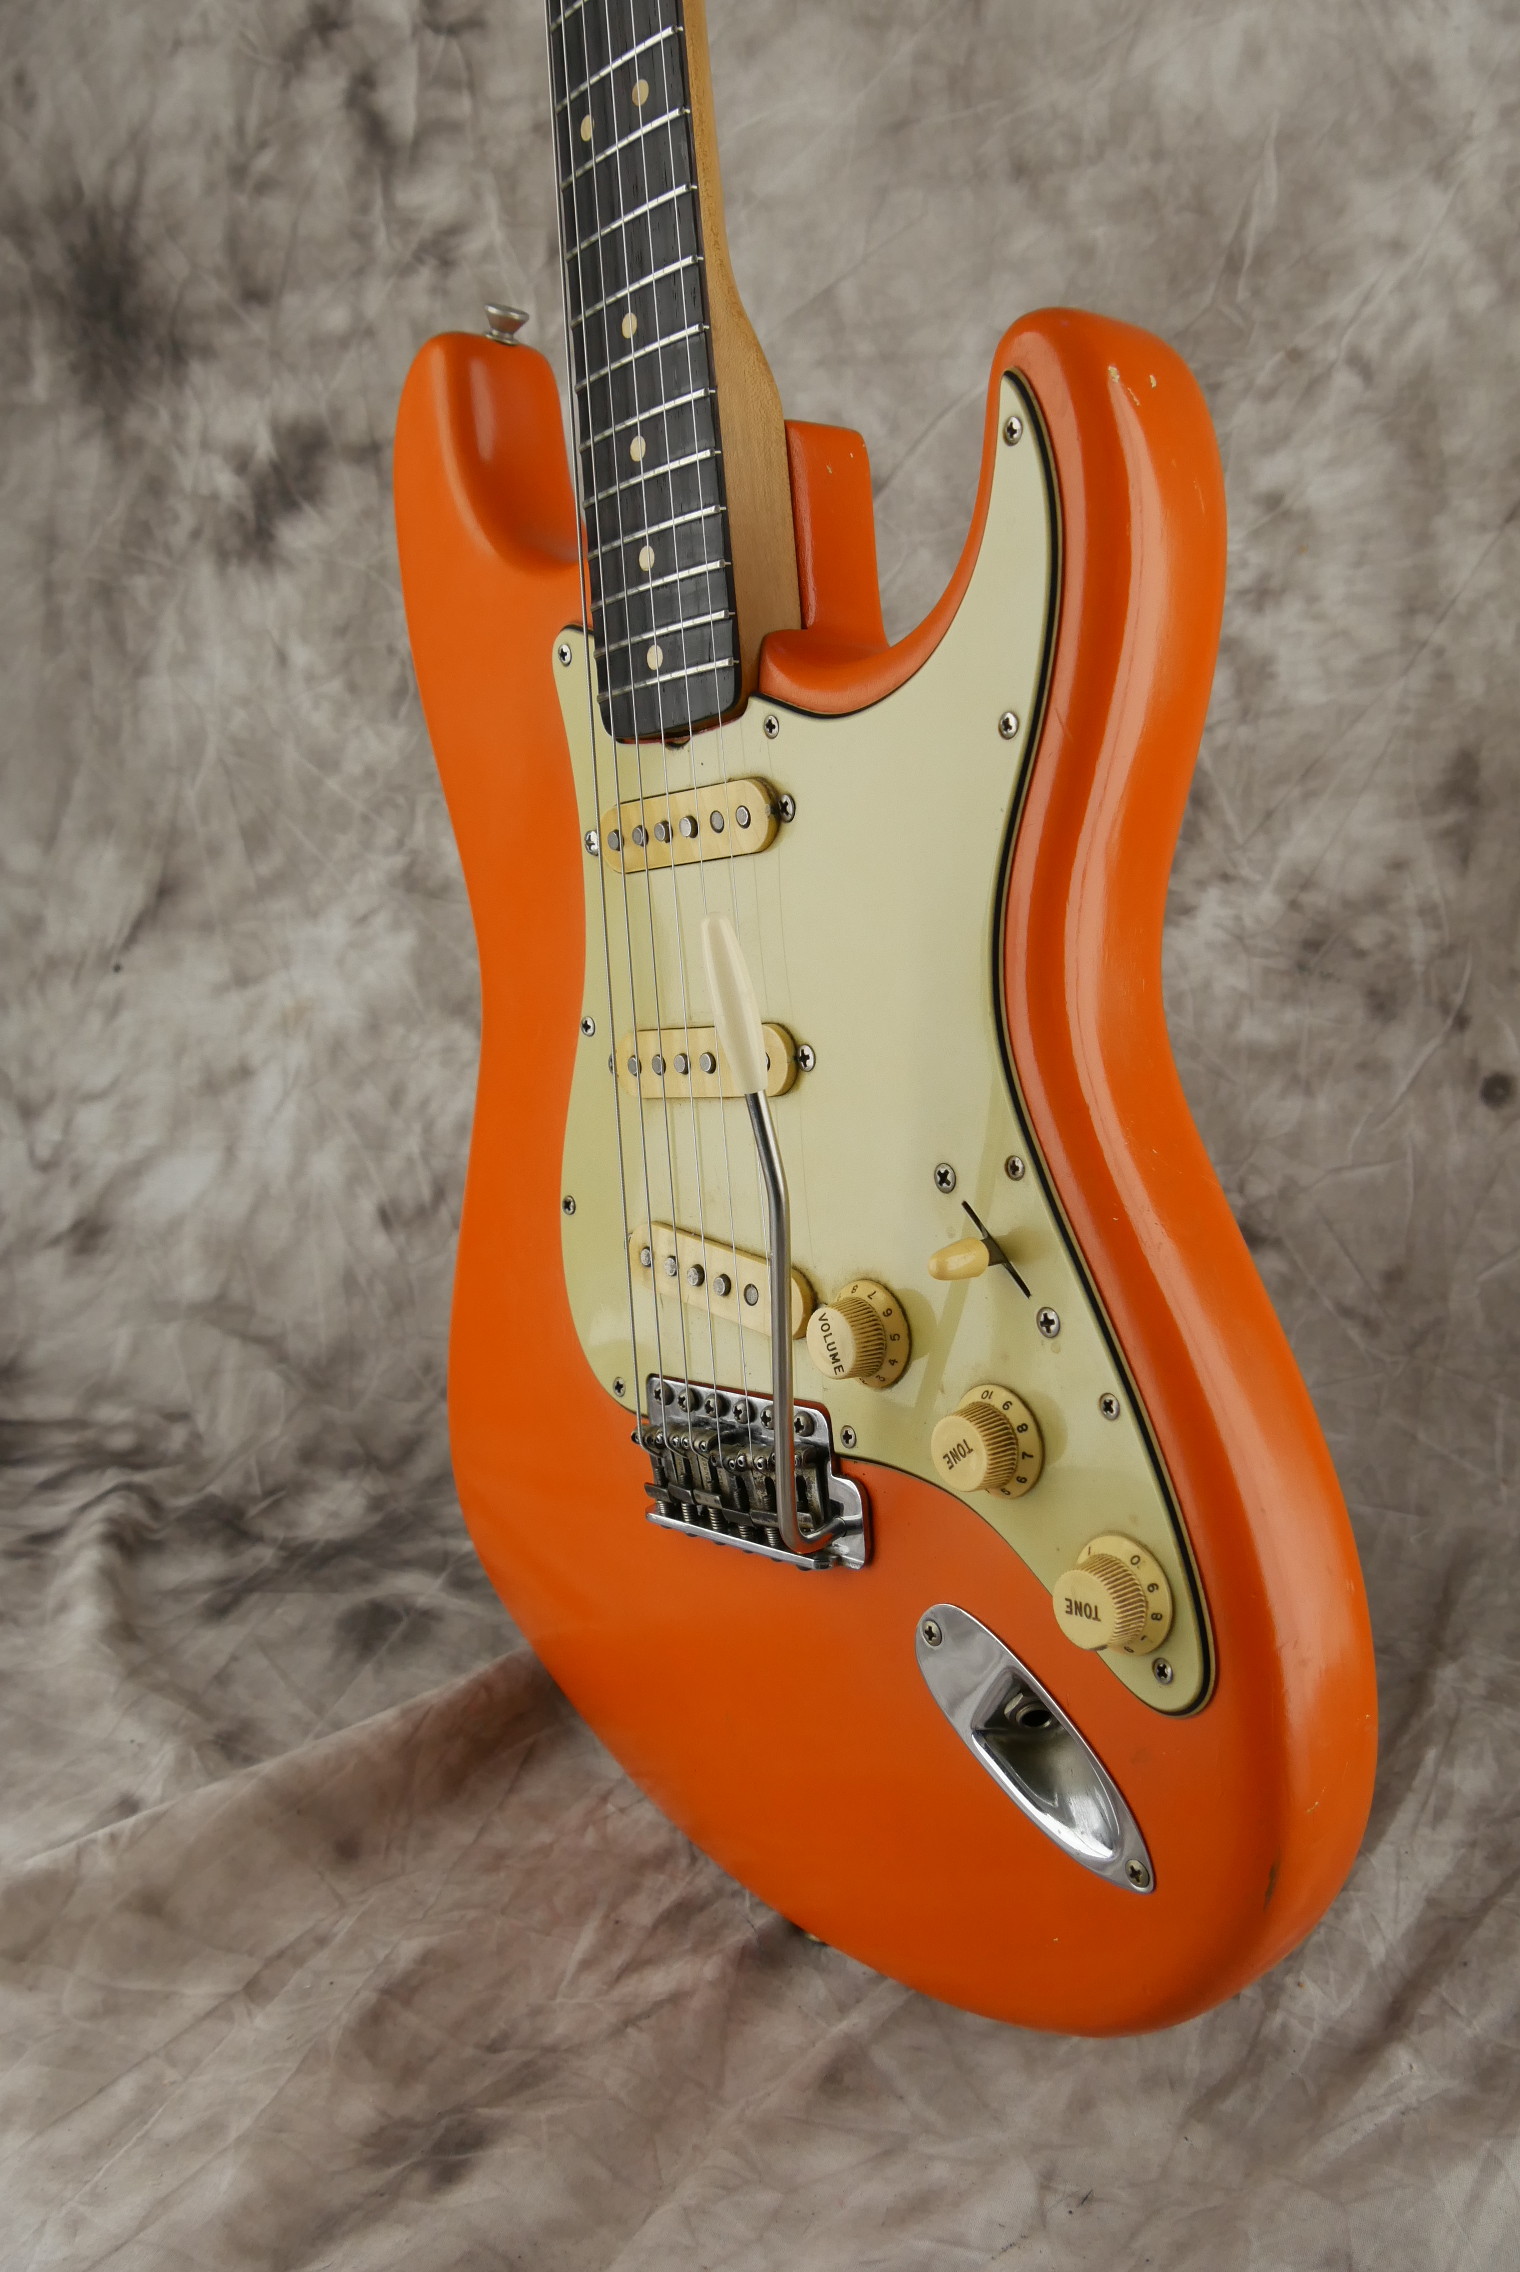 Fender-Stratocaster-1964-orange-refinish-006.JPG